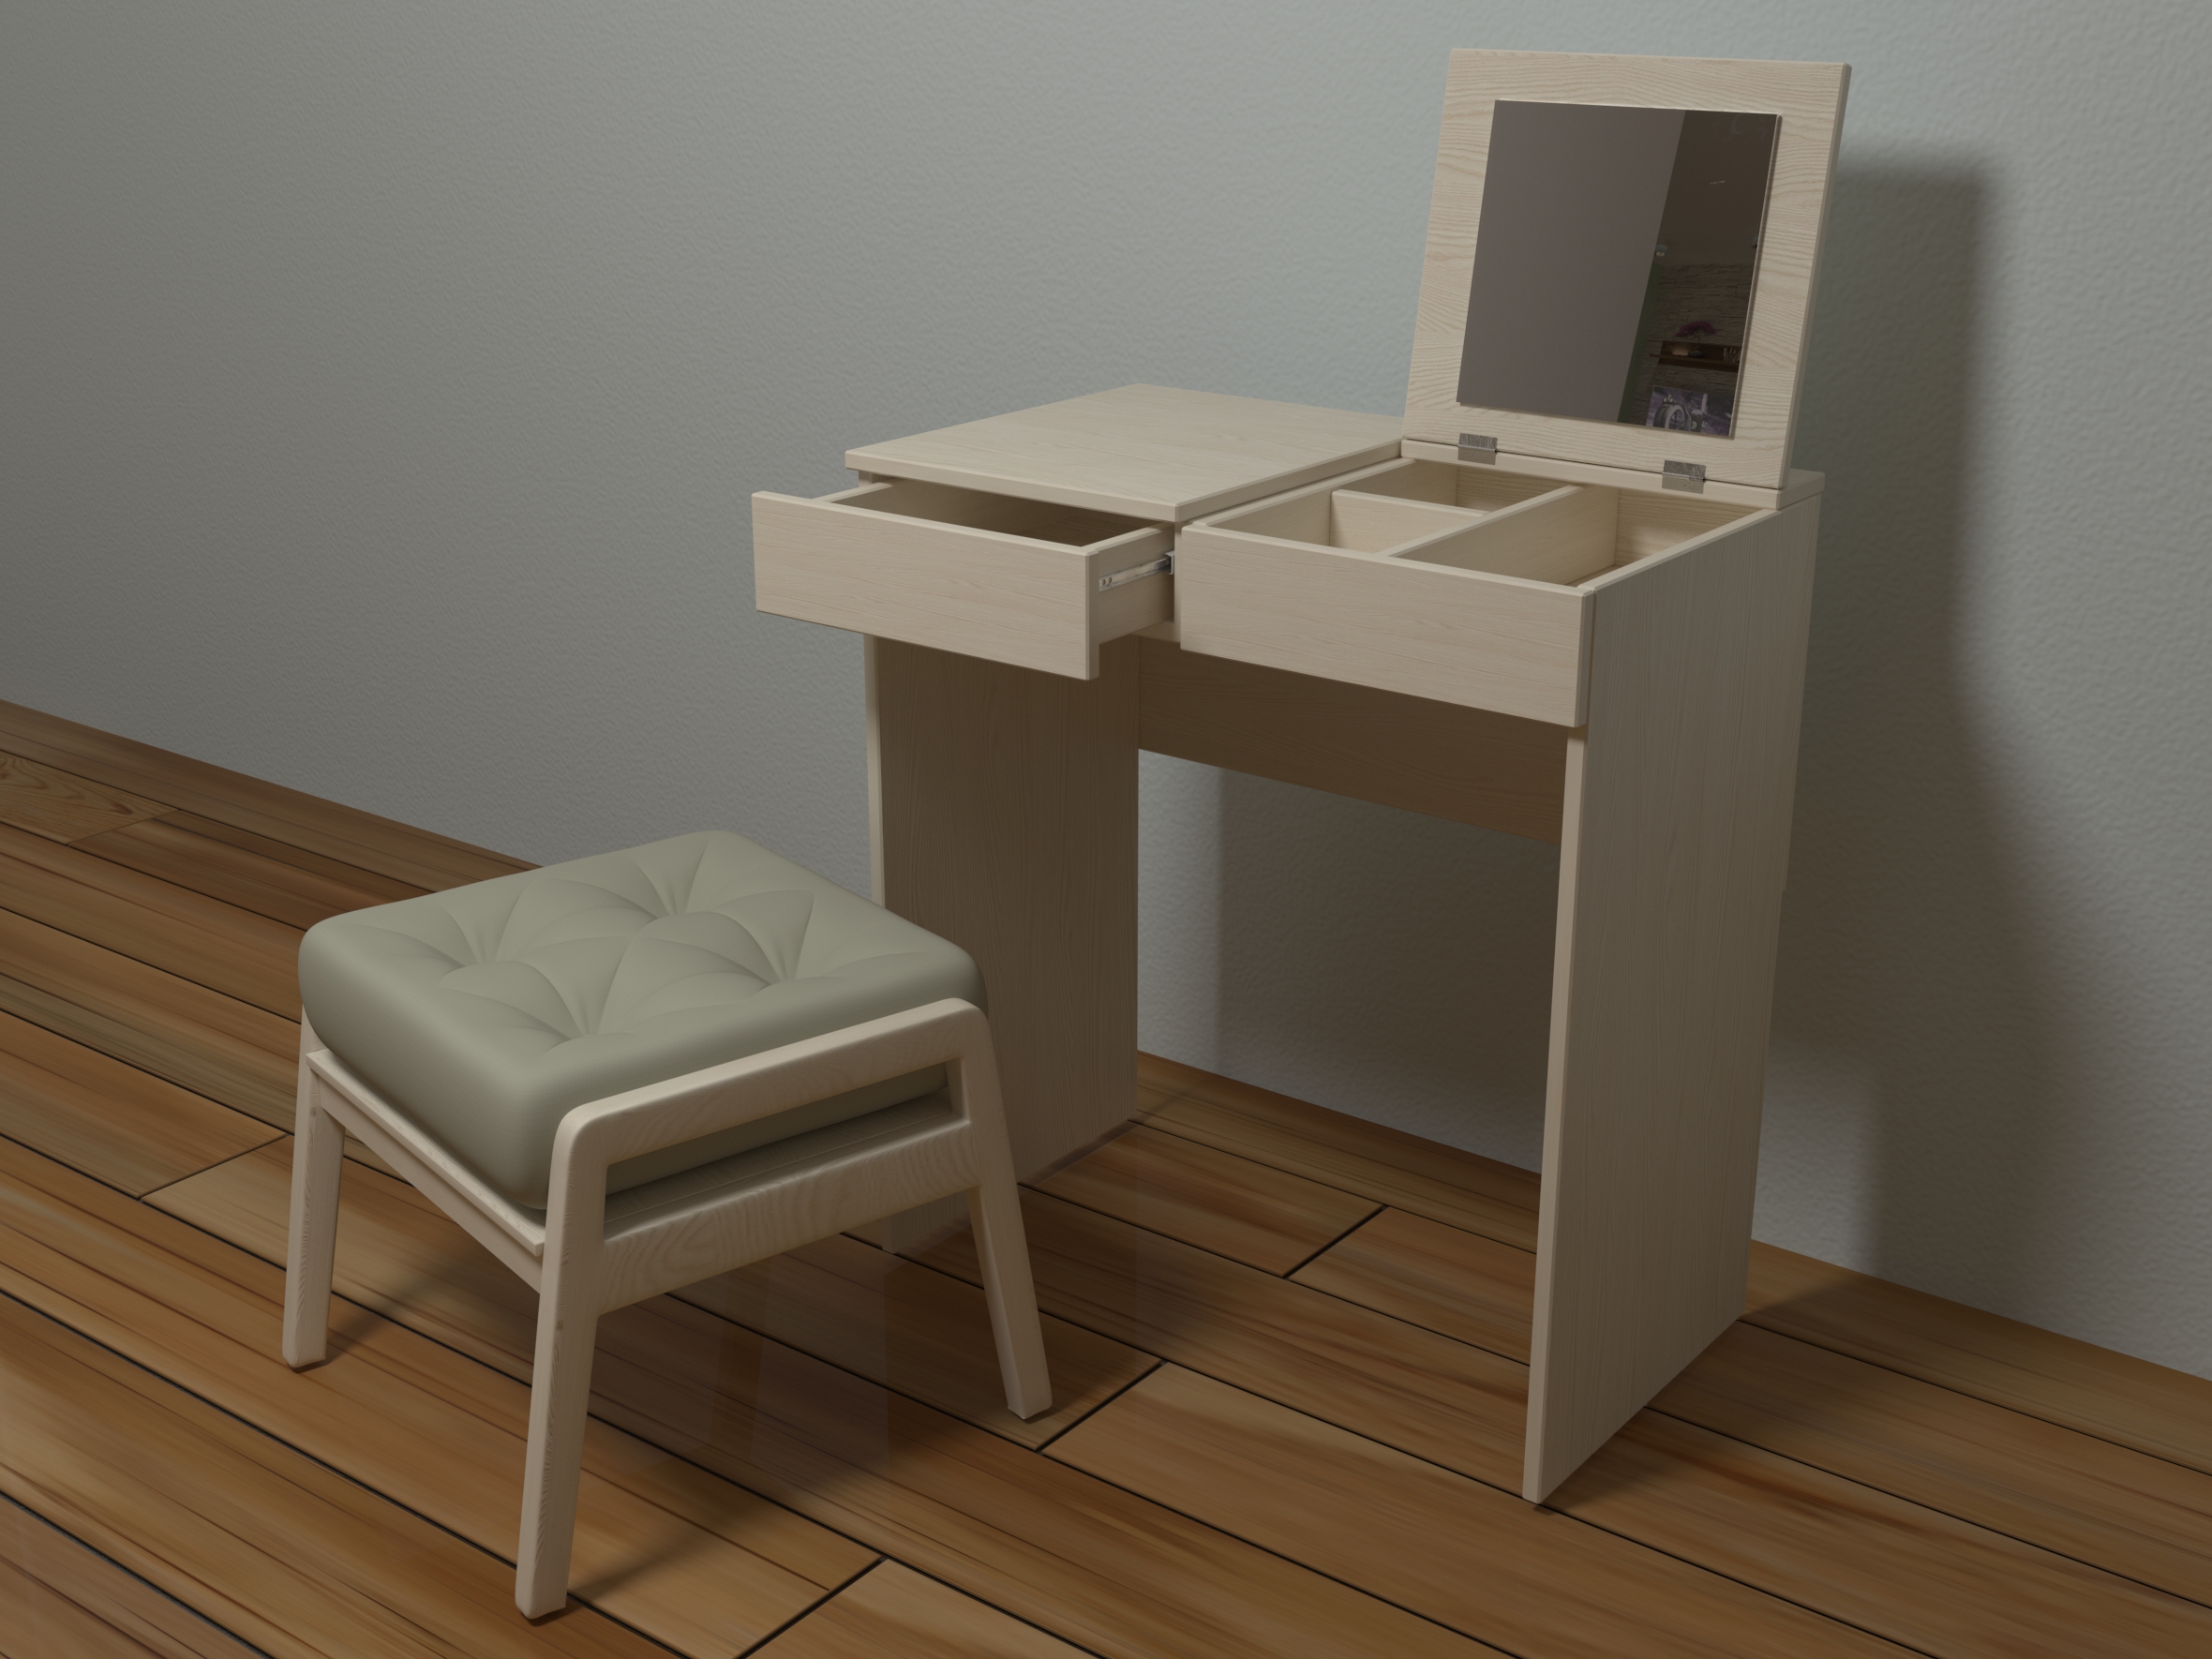 Tuvalet masası ve osmanlı in 3d max corona render resim